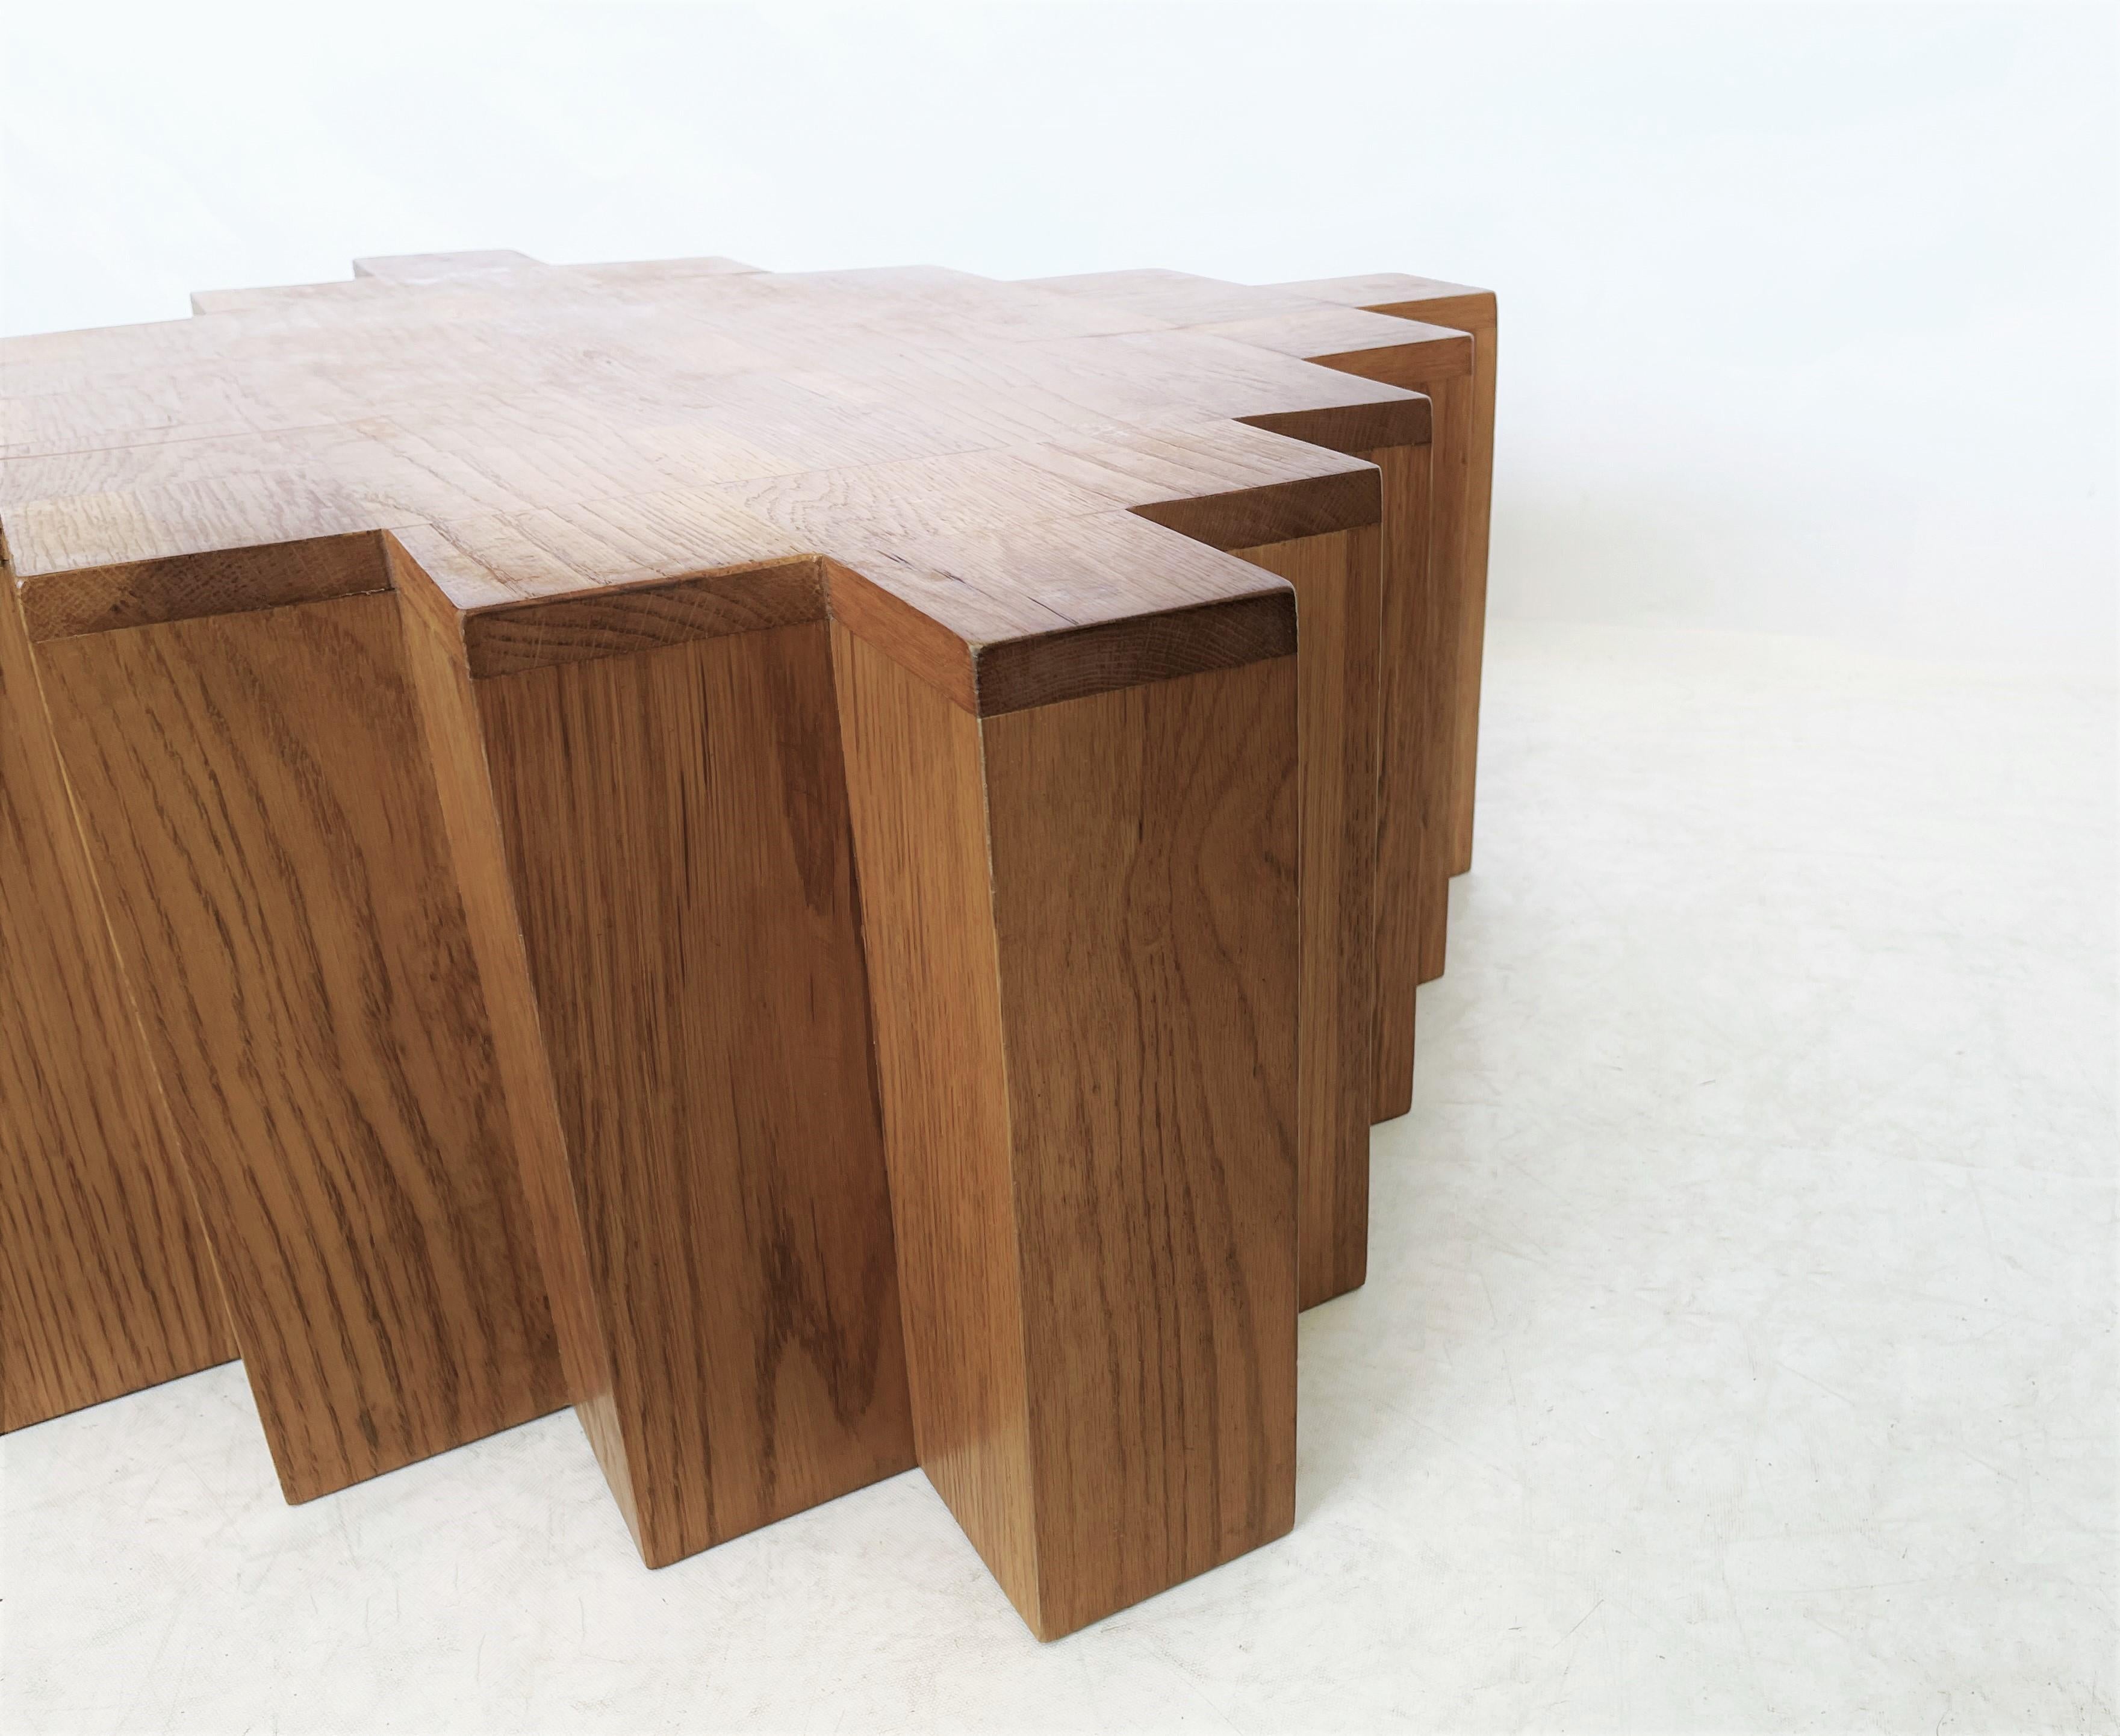 Table basse moderne et sculpturale. La forme géométrique forte du cube avec des coins symétriques répétitifs en retrait est accentuée par le grain distinctif et récurrent du bois de chêne naturel. De grandes proportions. Une patine incroyable. Il